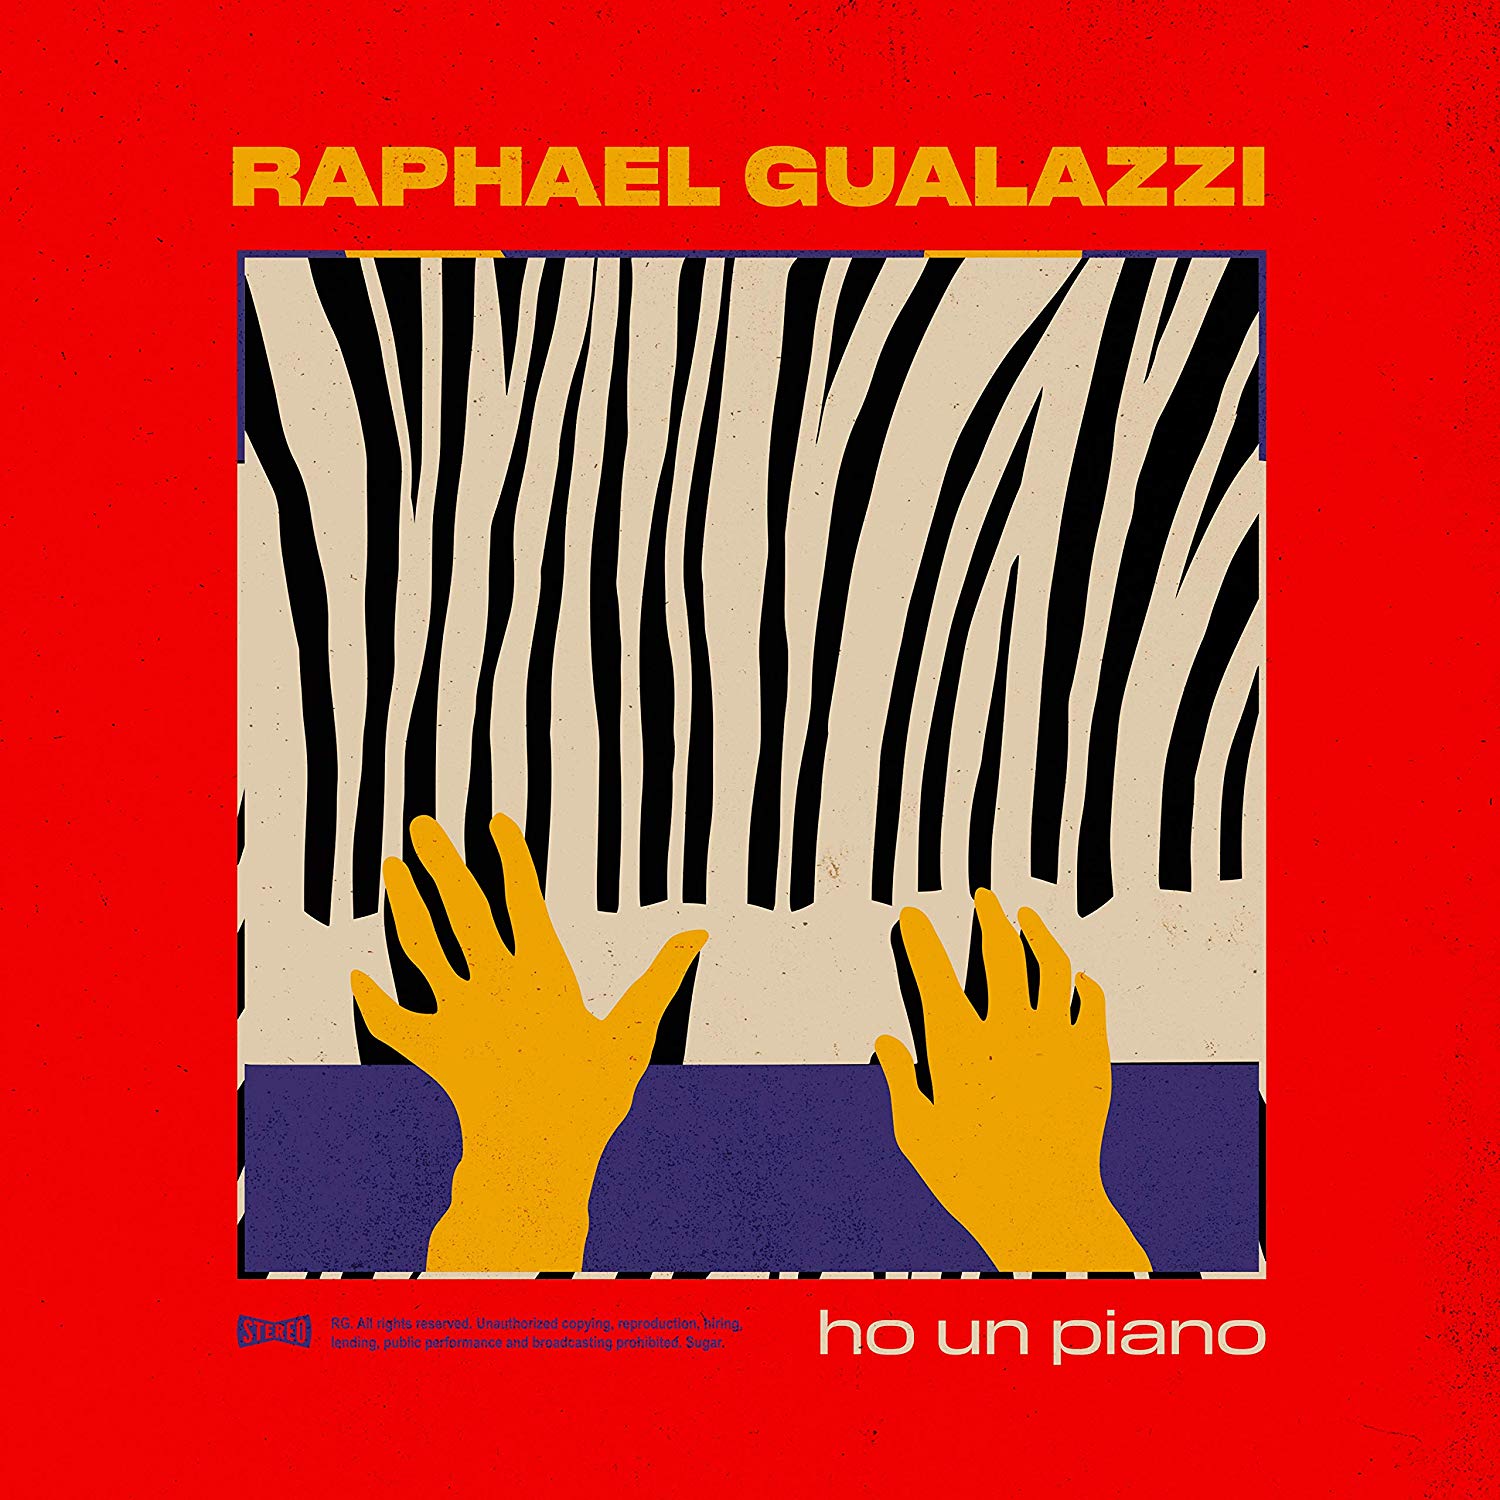 Raphael Gualazzi ho un piano album 2020 copertina